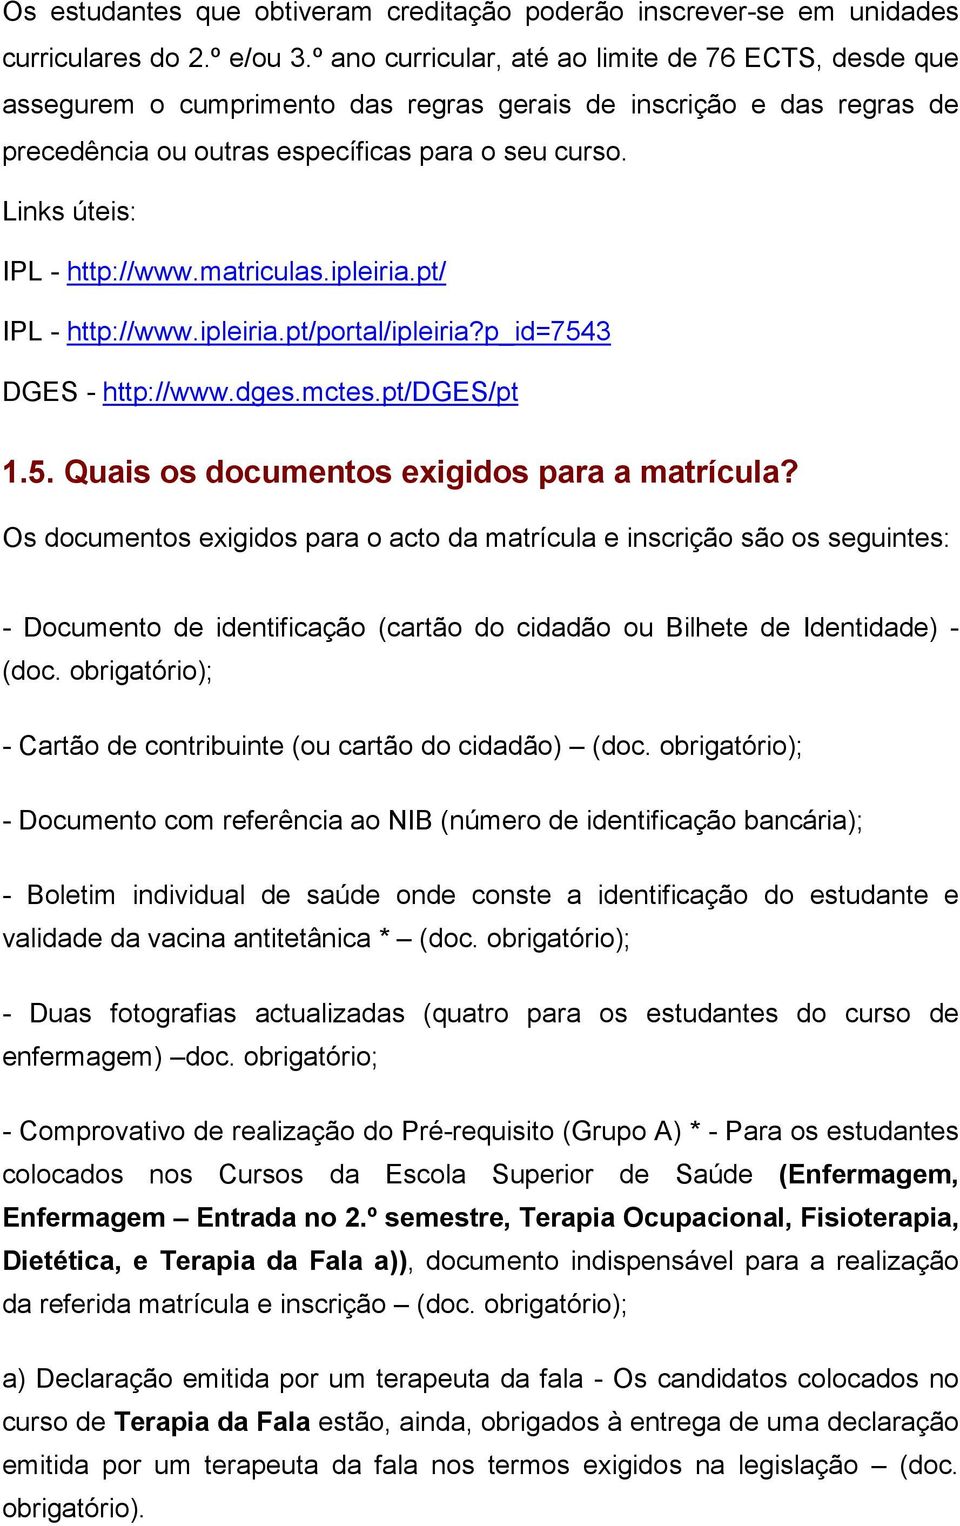 matriculas.ipleiria.pt/ IPL - http://www.ipleiria.pt/portal/ipleiria?p_id=7543 1.5. Quais os documentos exigidos para a matrícula?